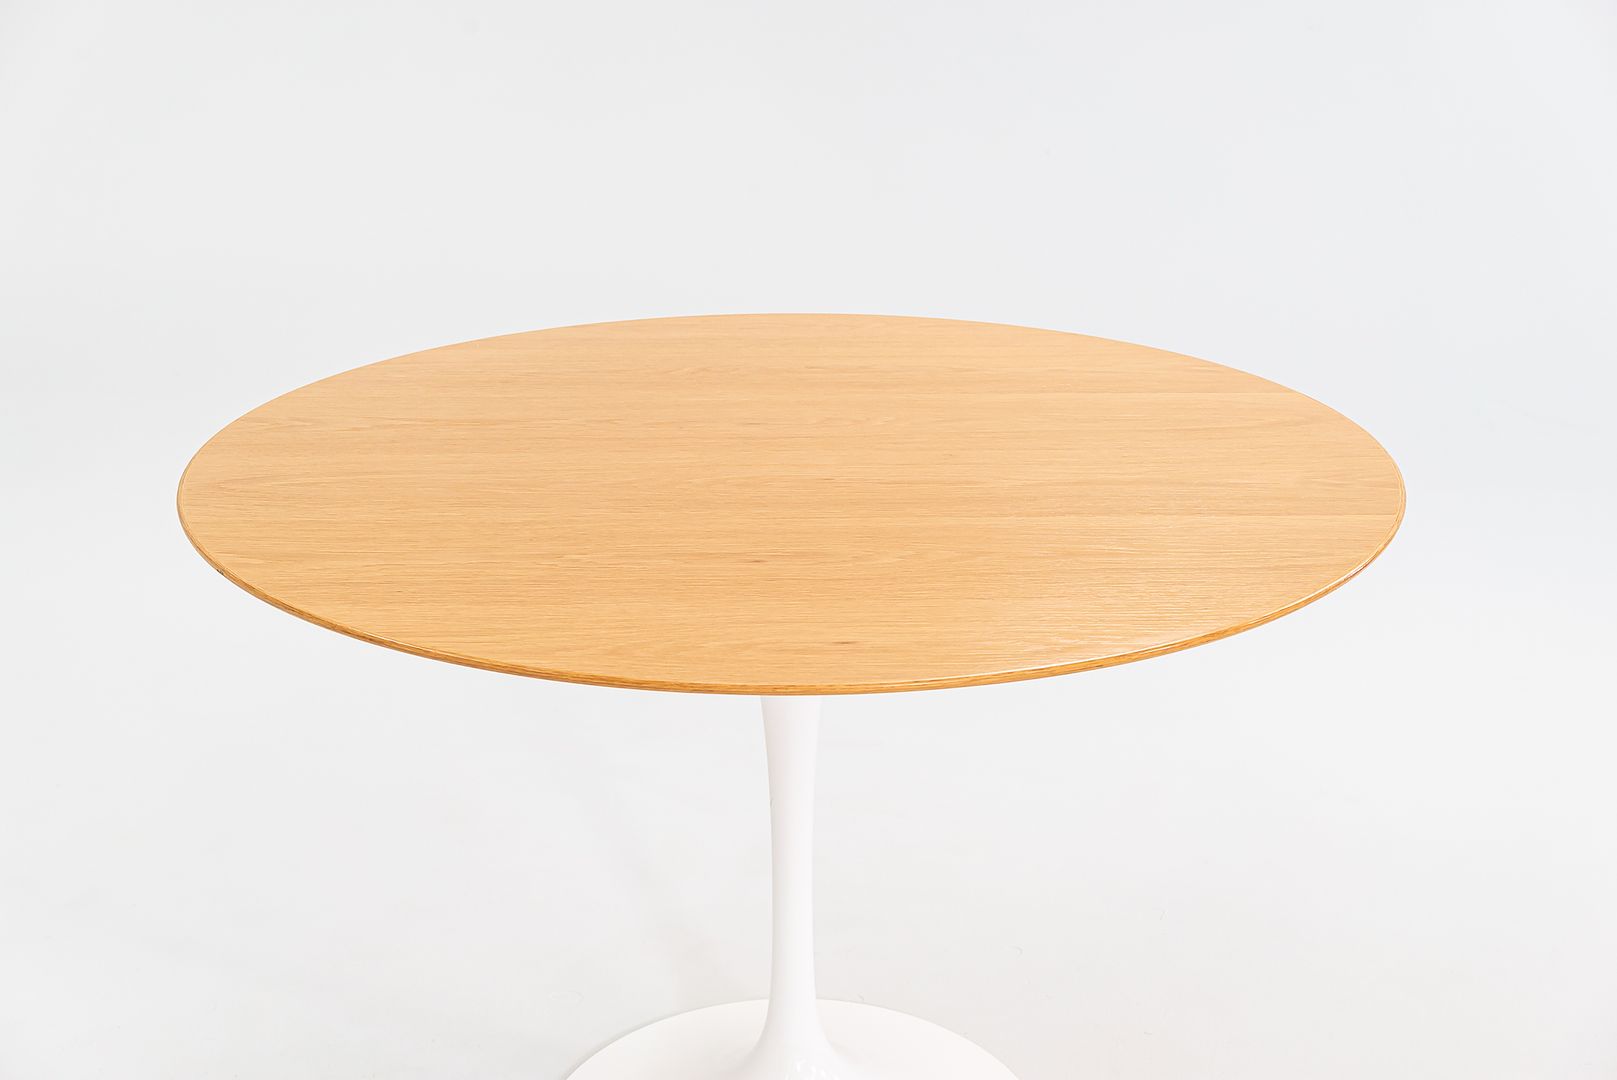 Saarinen Dining Table, Model 173O